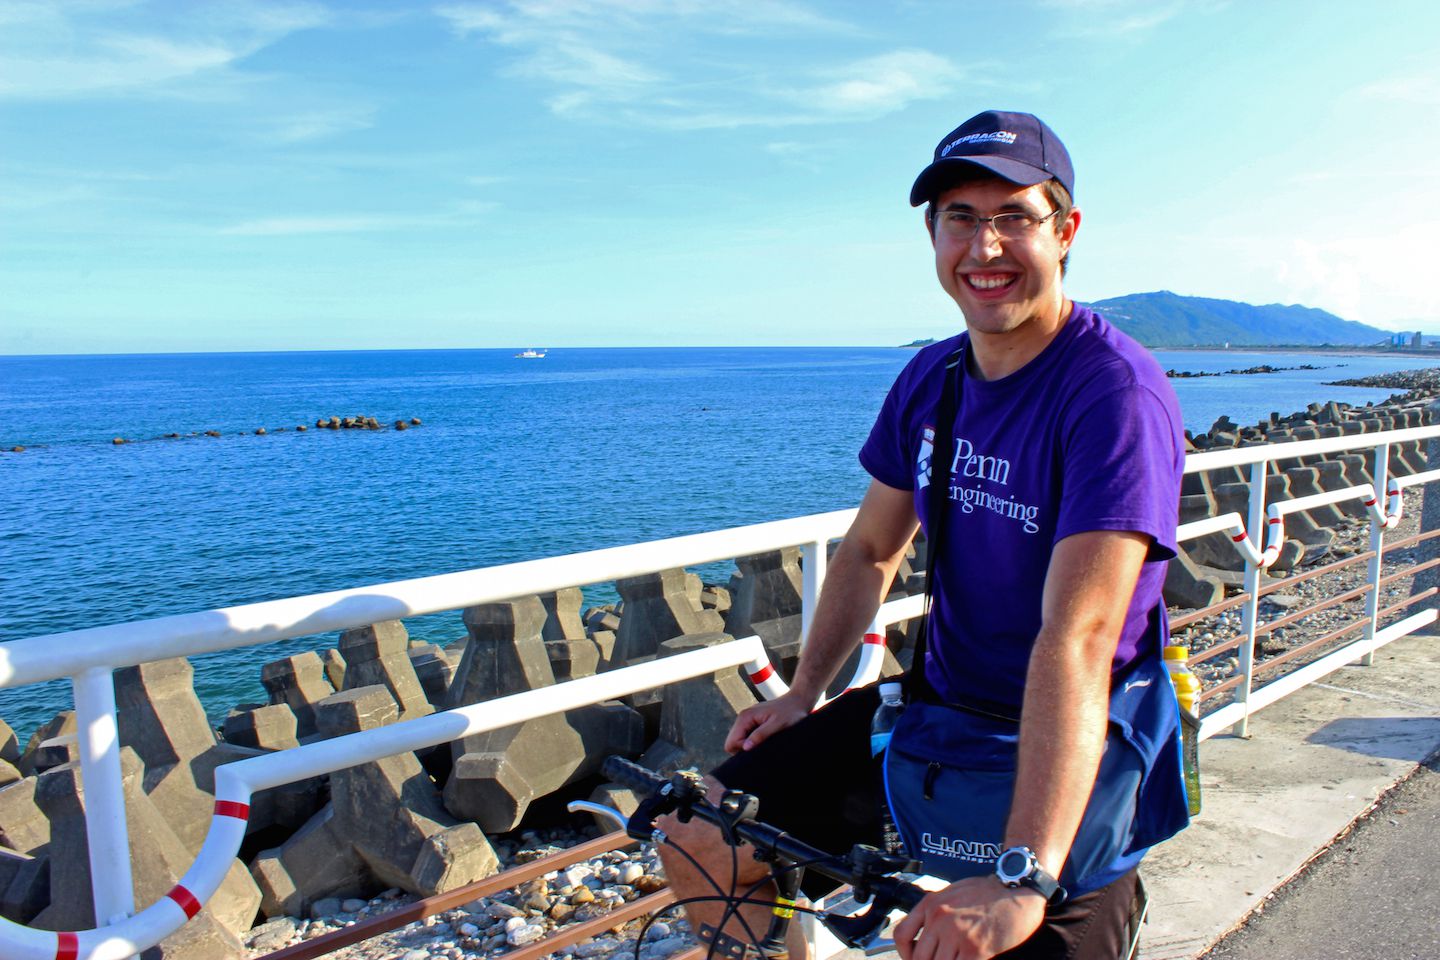 Carlos biking in Hualien